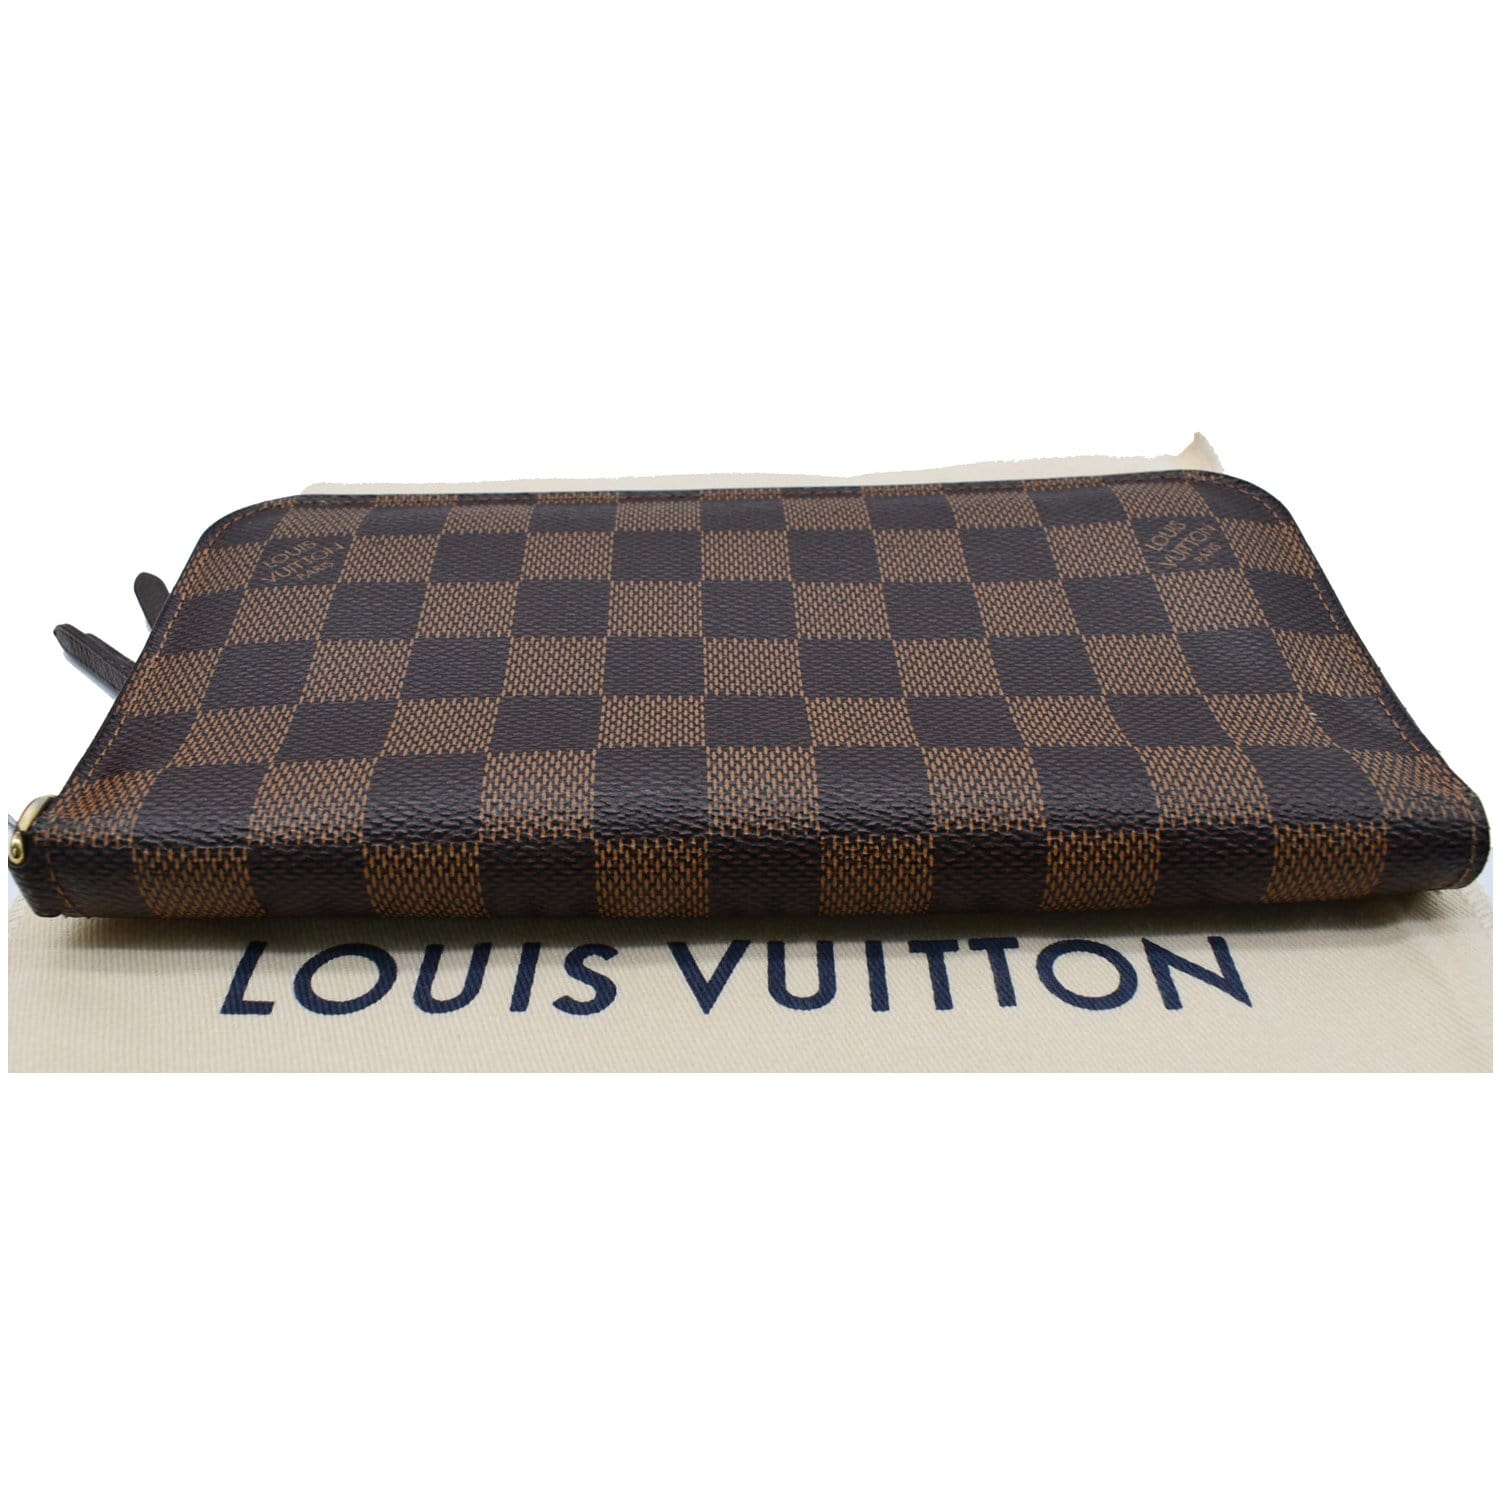 Louis Vuitton Damier Ebene Canvas Insolite Wallet Louis Vuitton